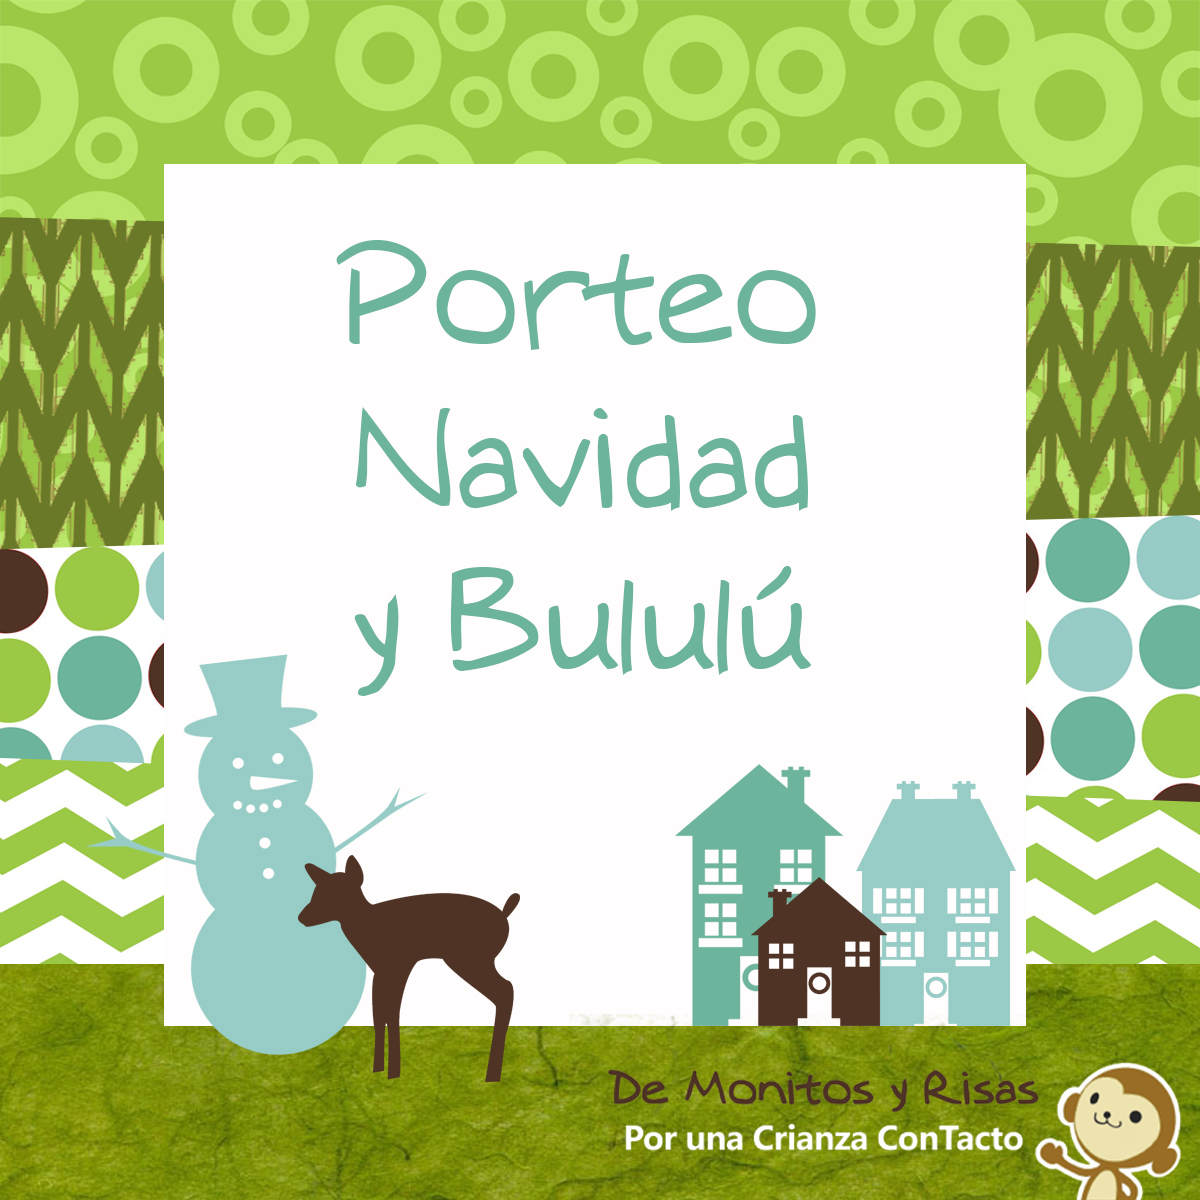 Porteo, Navidad y «Bululú» (*)